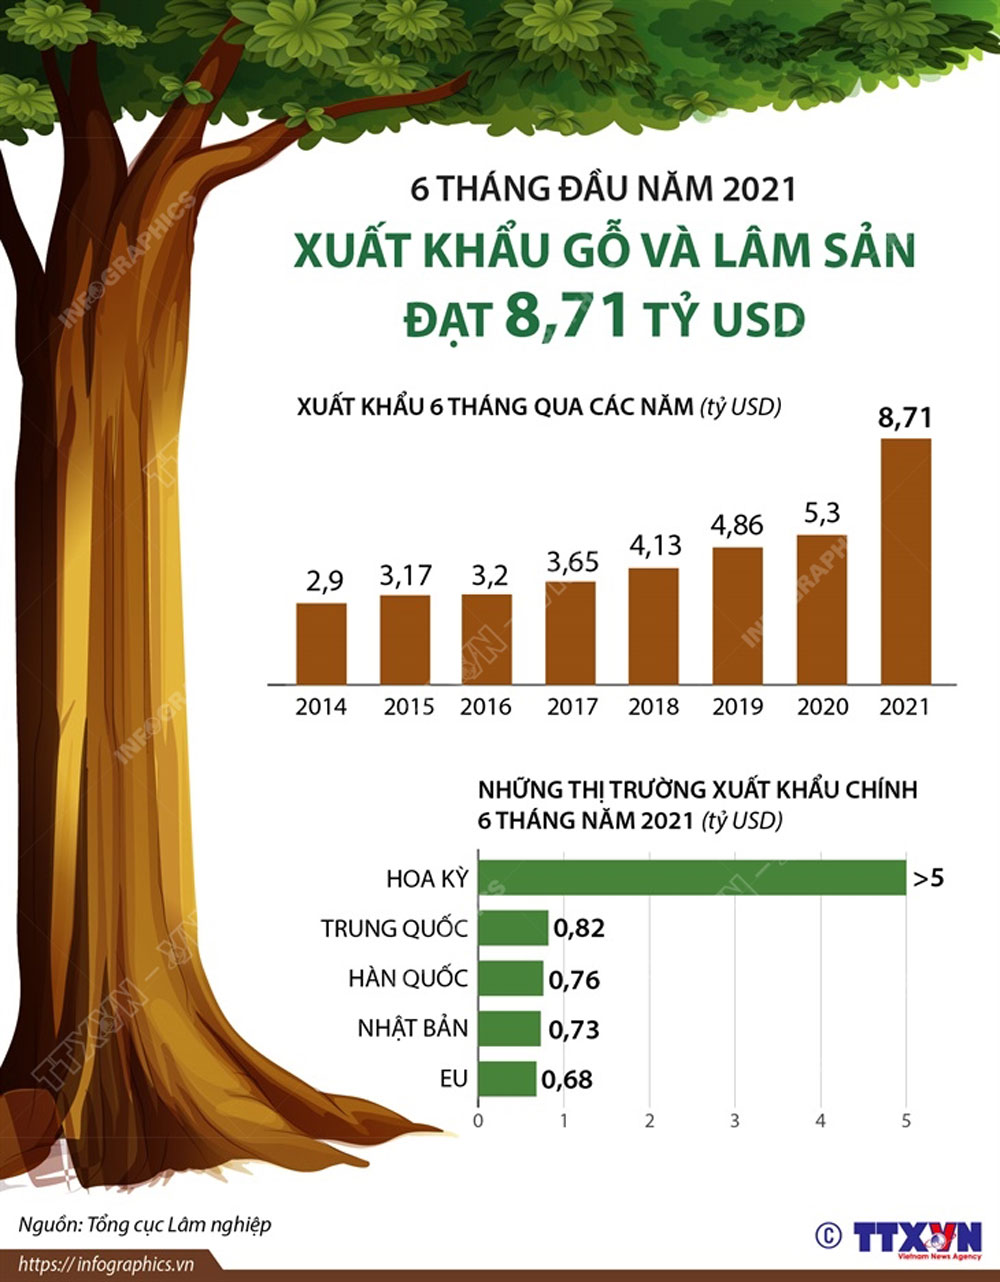 6 tháng đầu năm 2021, xuất khẩu gỗ và lâm sản đạt 8,71 tỷ USD